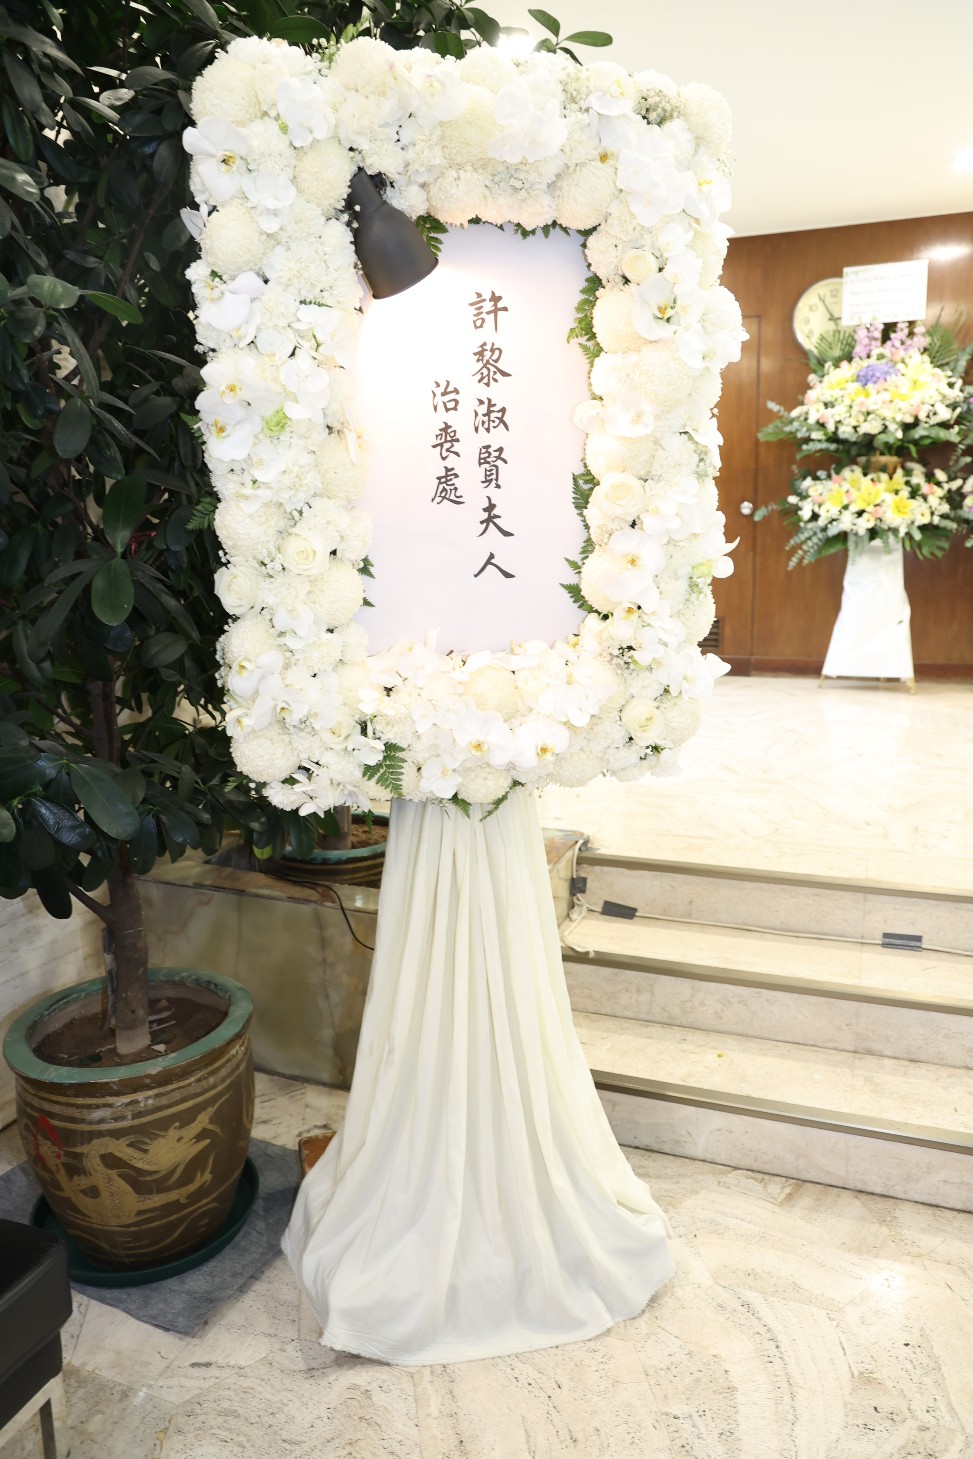 黎淑贤于香港殡仪馆设灵。